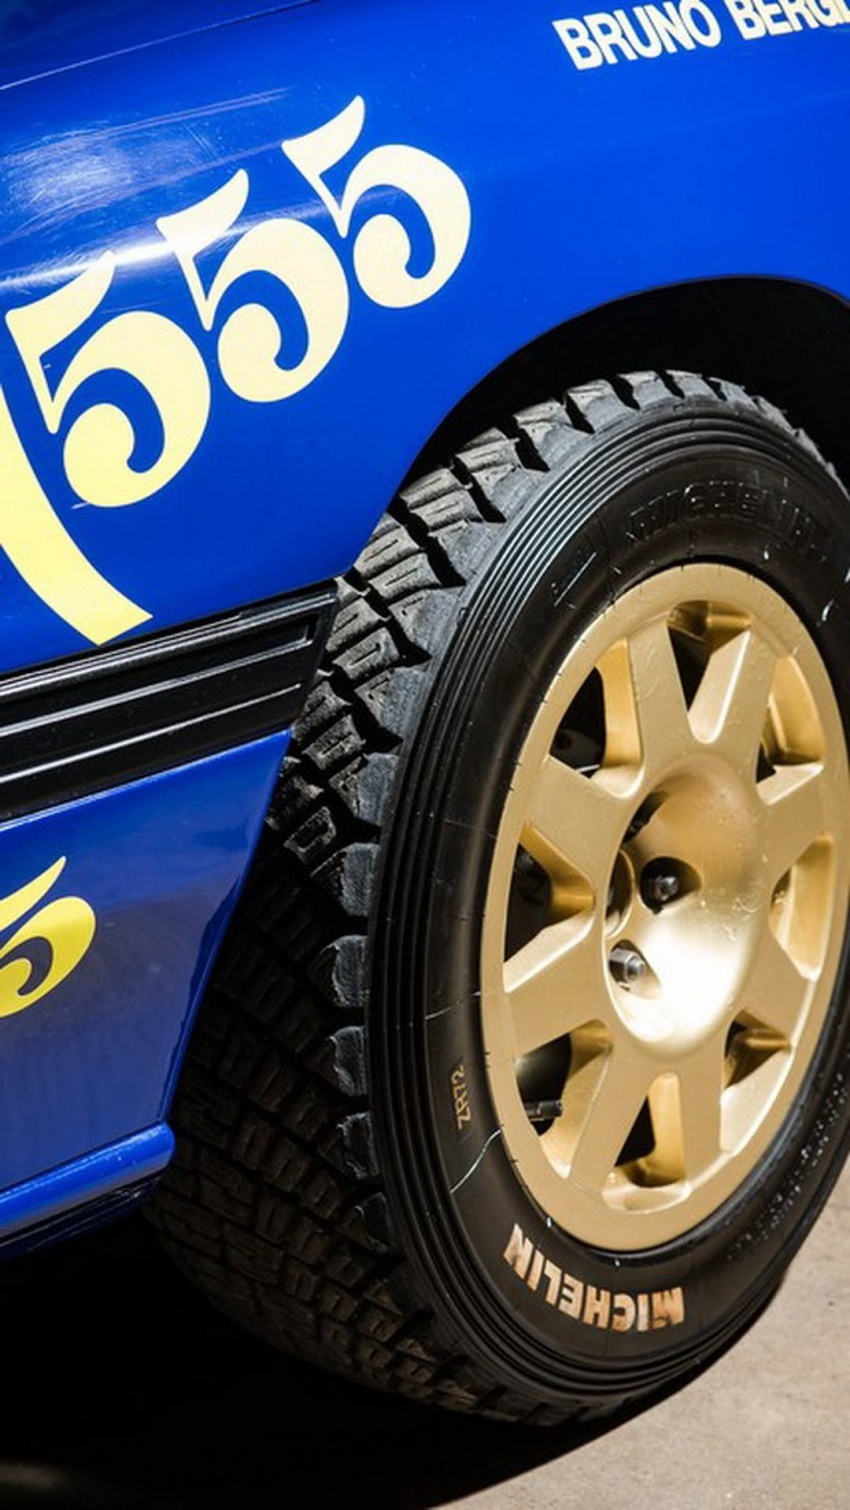 Jentera rali Subaru Legacy RS Group A yang pernah dipandu Ari Vatanen dan Richard Burns bakal dilelong 765232